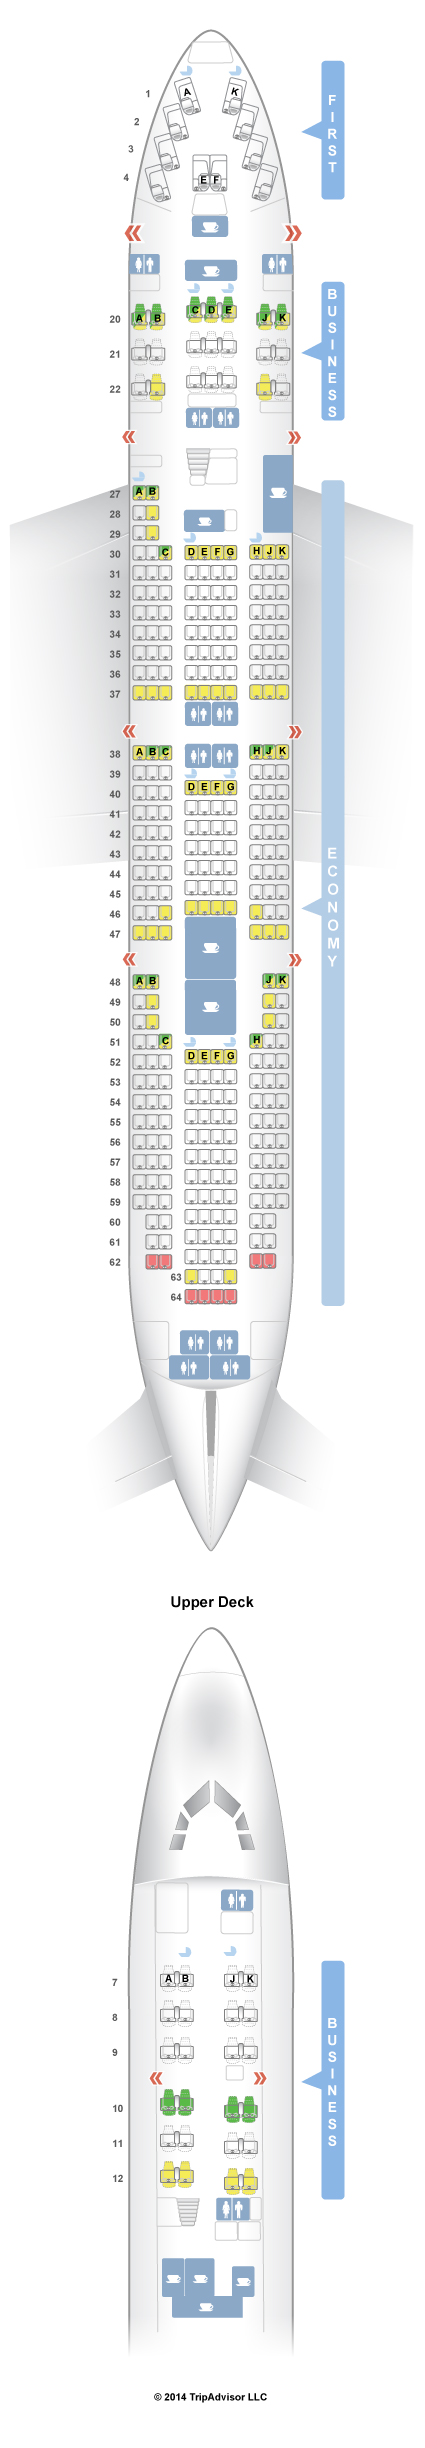 boeing 747  400 seating